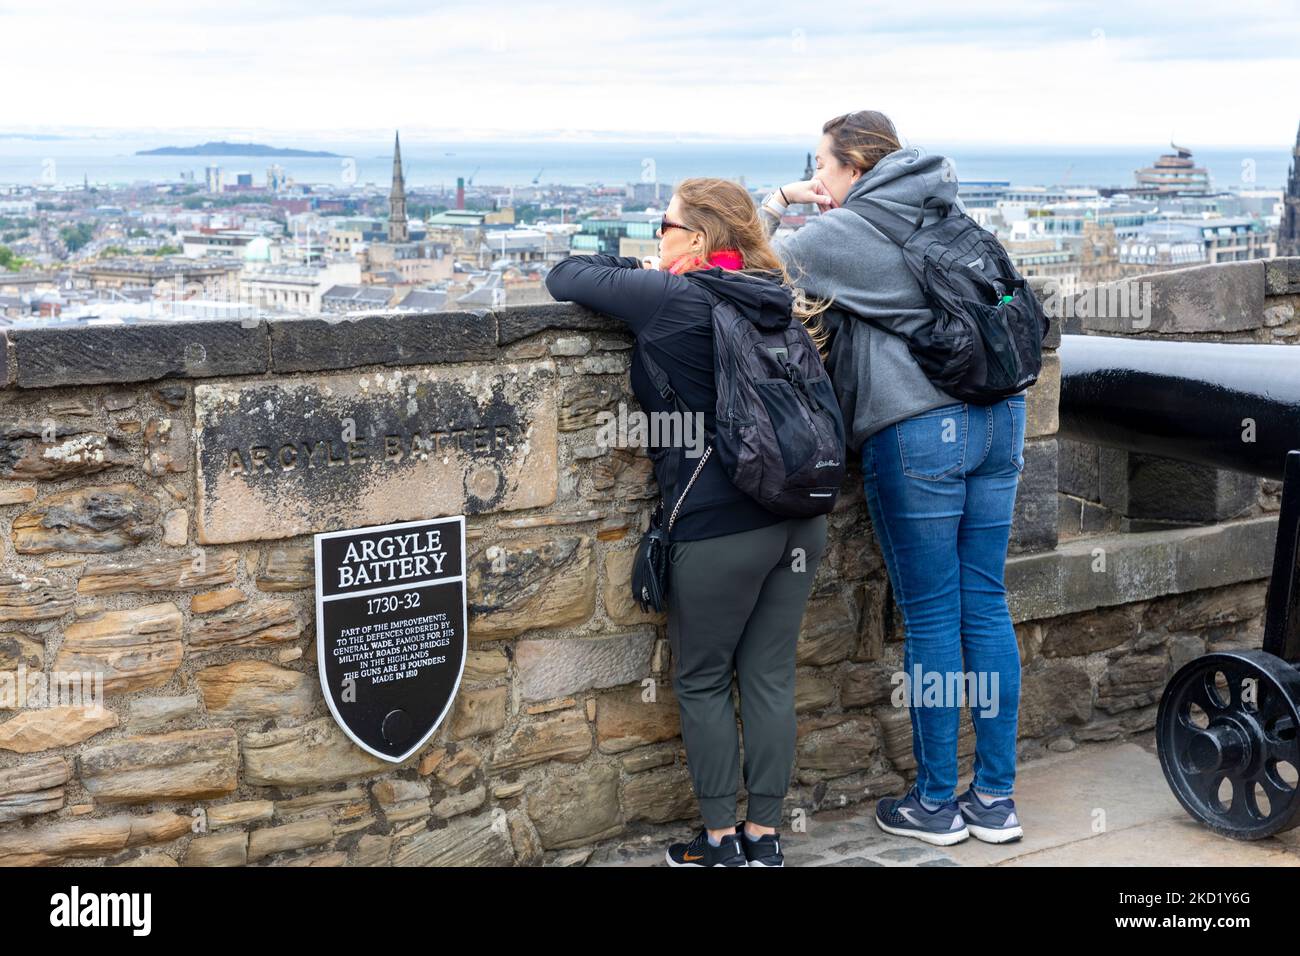 Edinburgh Castle weibliche Touristen sehen das stadtzentrum von edinburgh vom Argyle Battery Monument aus, Edinburgh, Schottland, Großbritannien Stockfoto